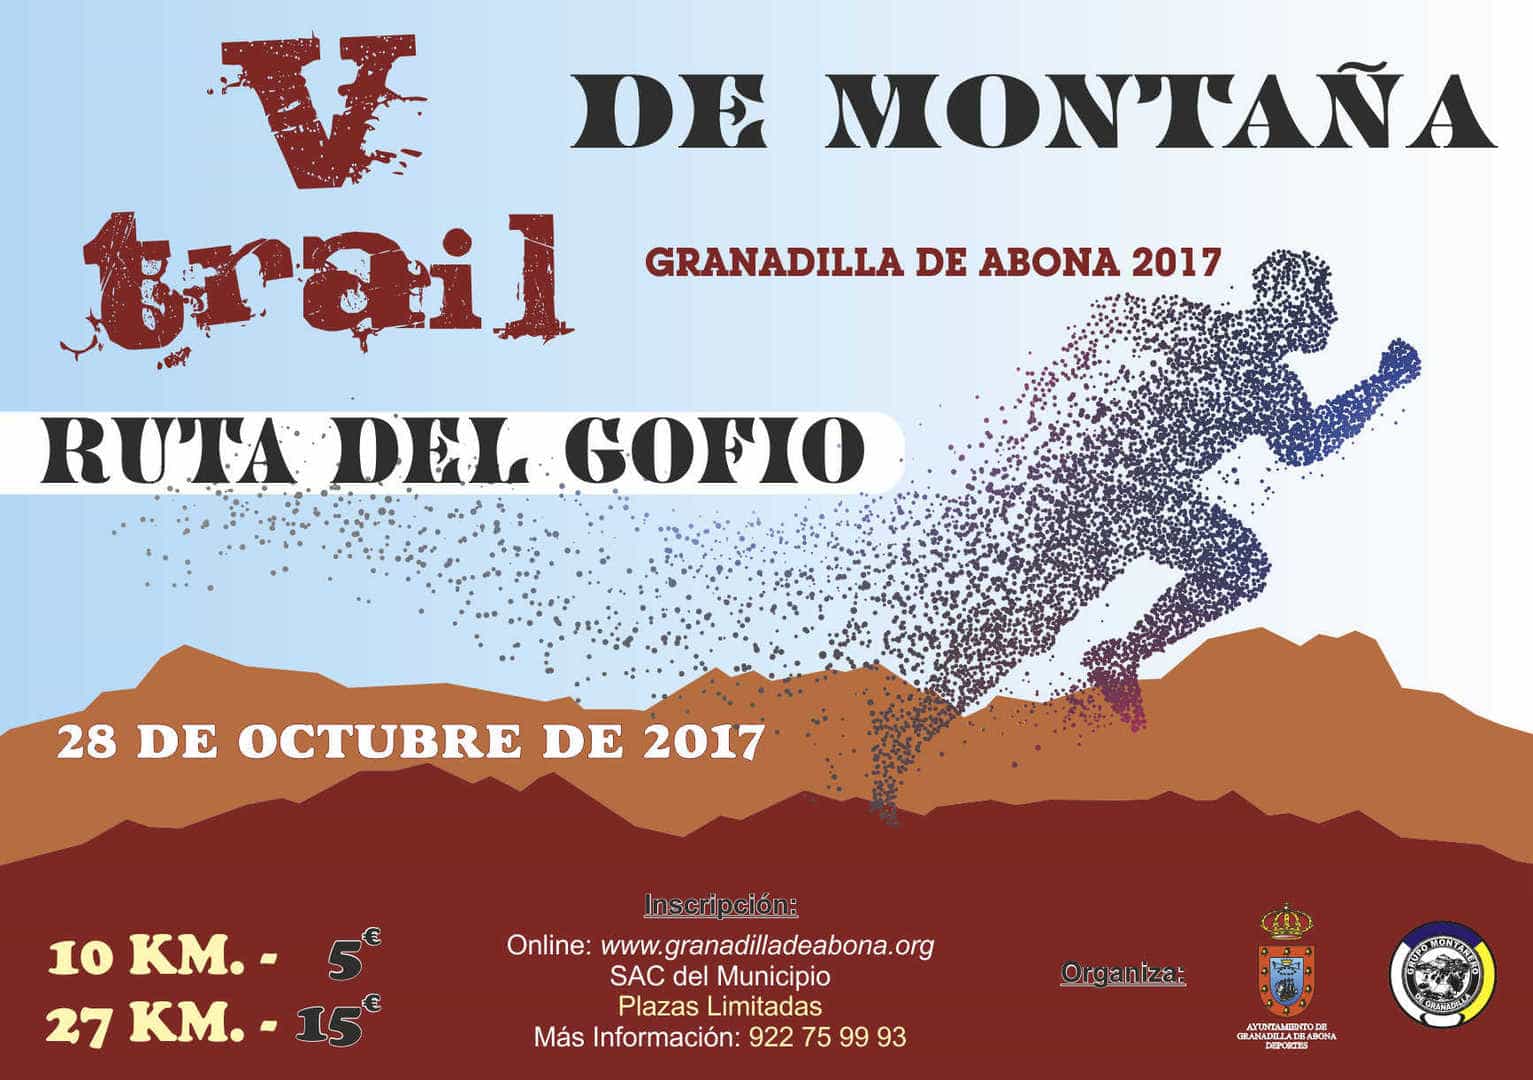 La ‘Semana de la Montaña’, del 28 de octubre al 5 de noviembre